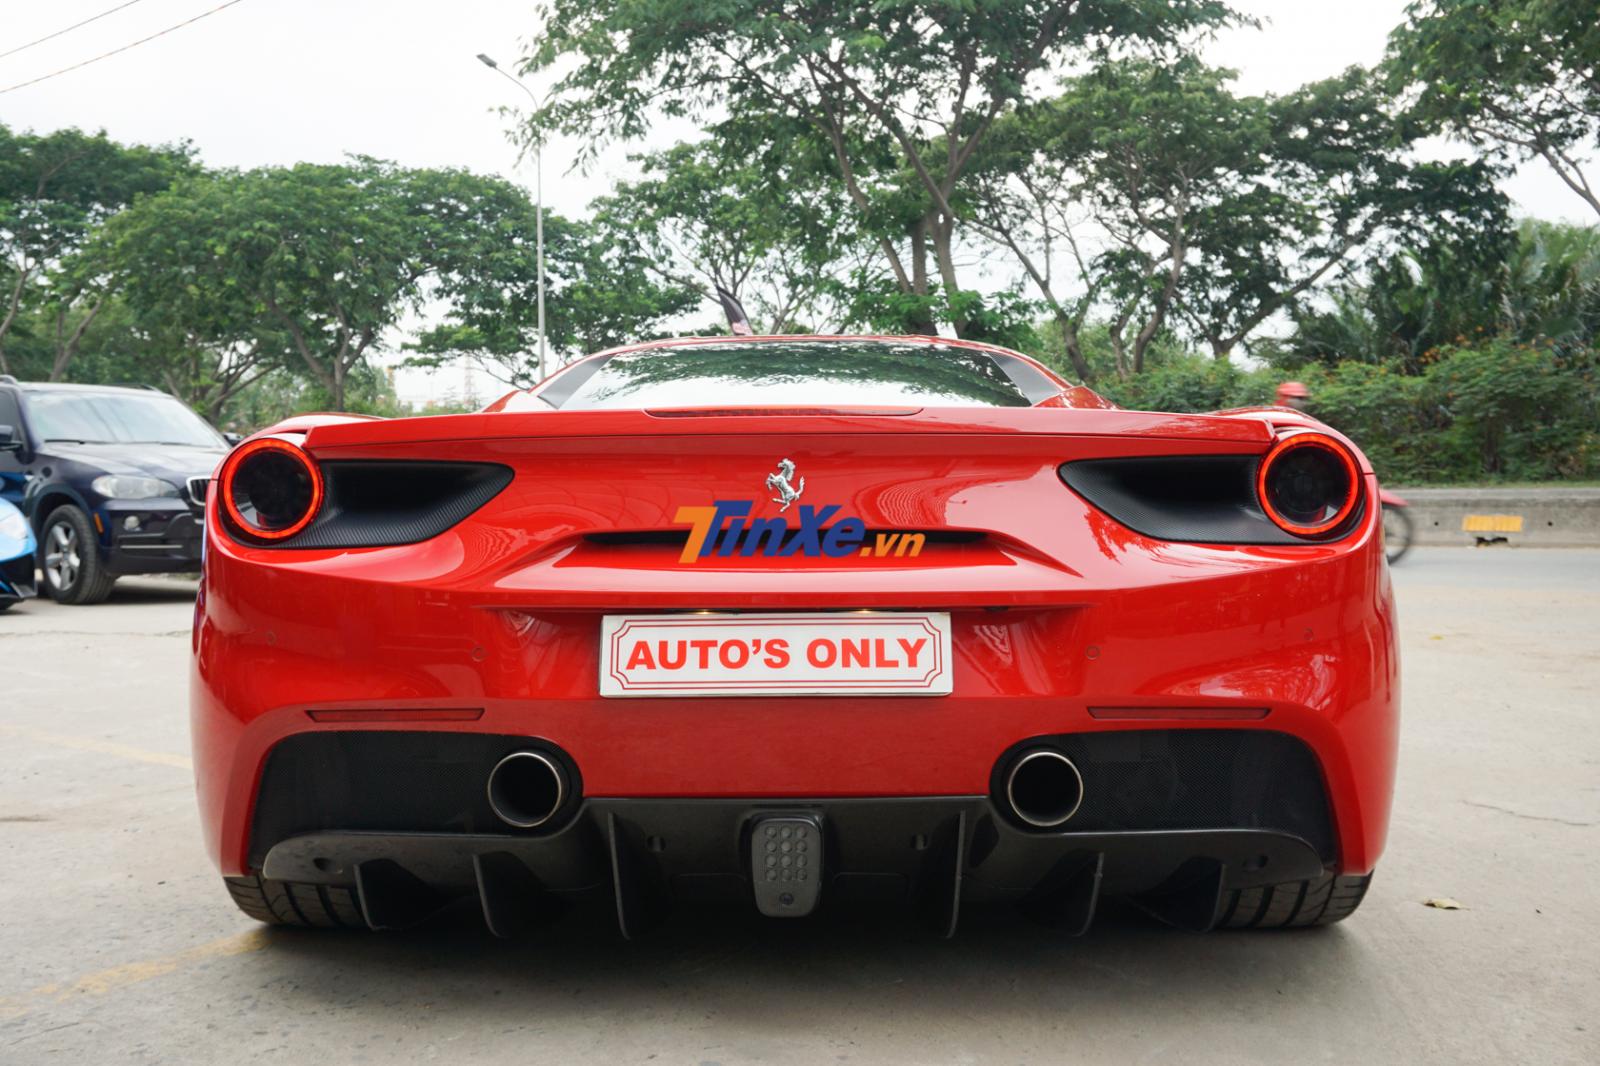  Giới mê xe rất vui mừng khi thấy siêu xe Ferrari 488 GTB của Tuấn Hưng đã tái xuất sau tai nạn